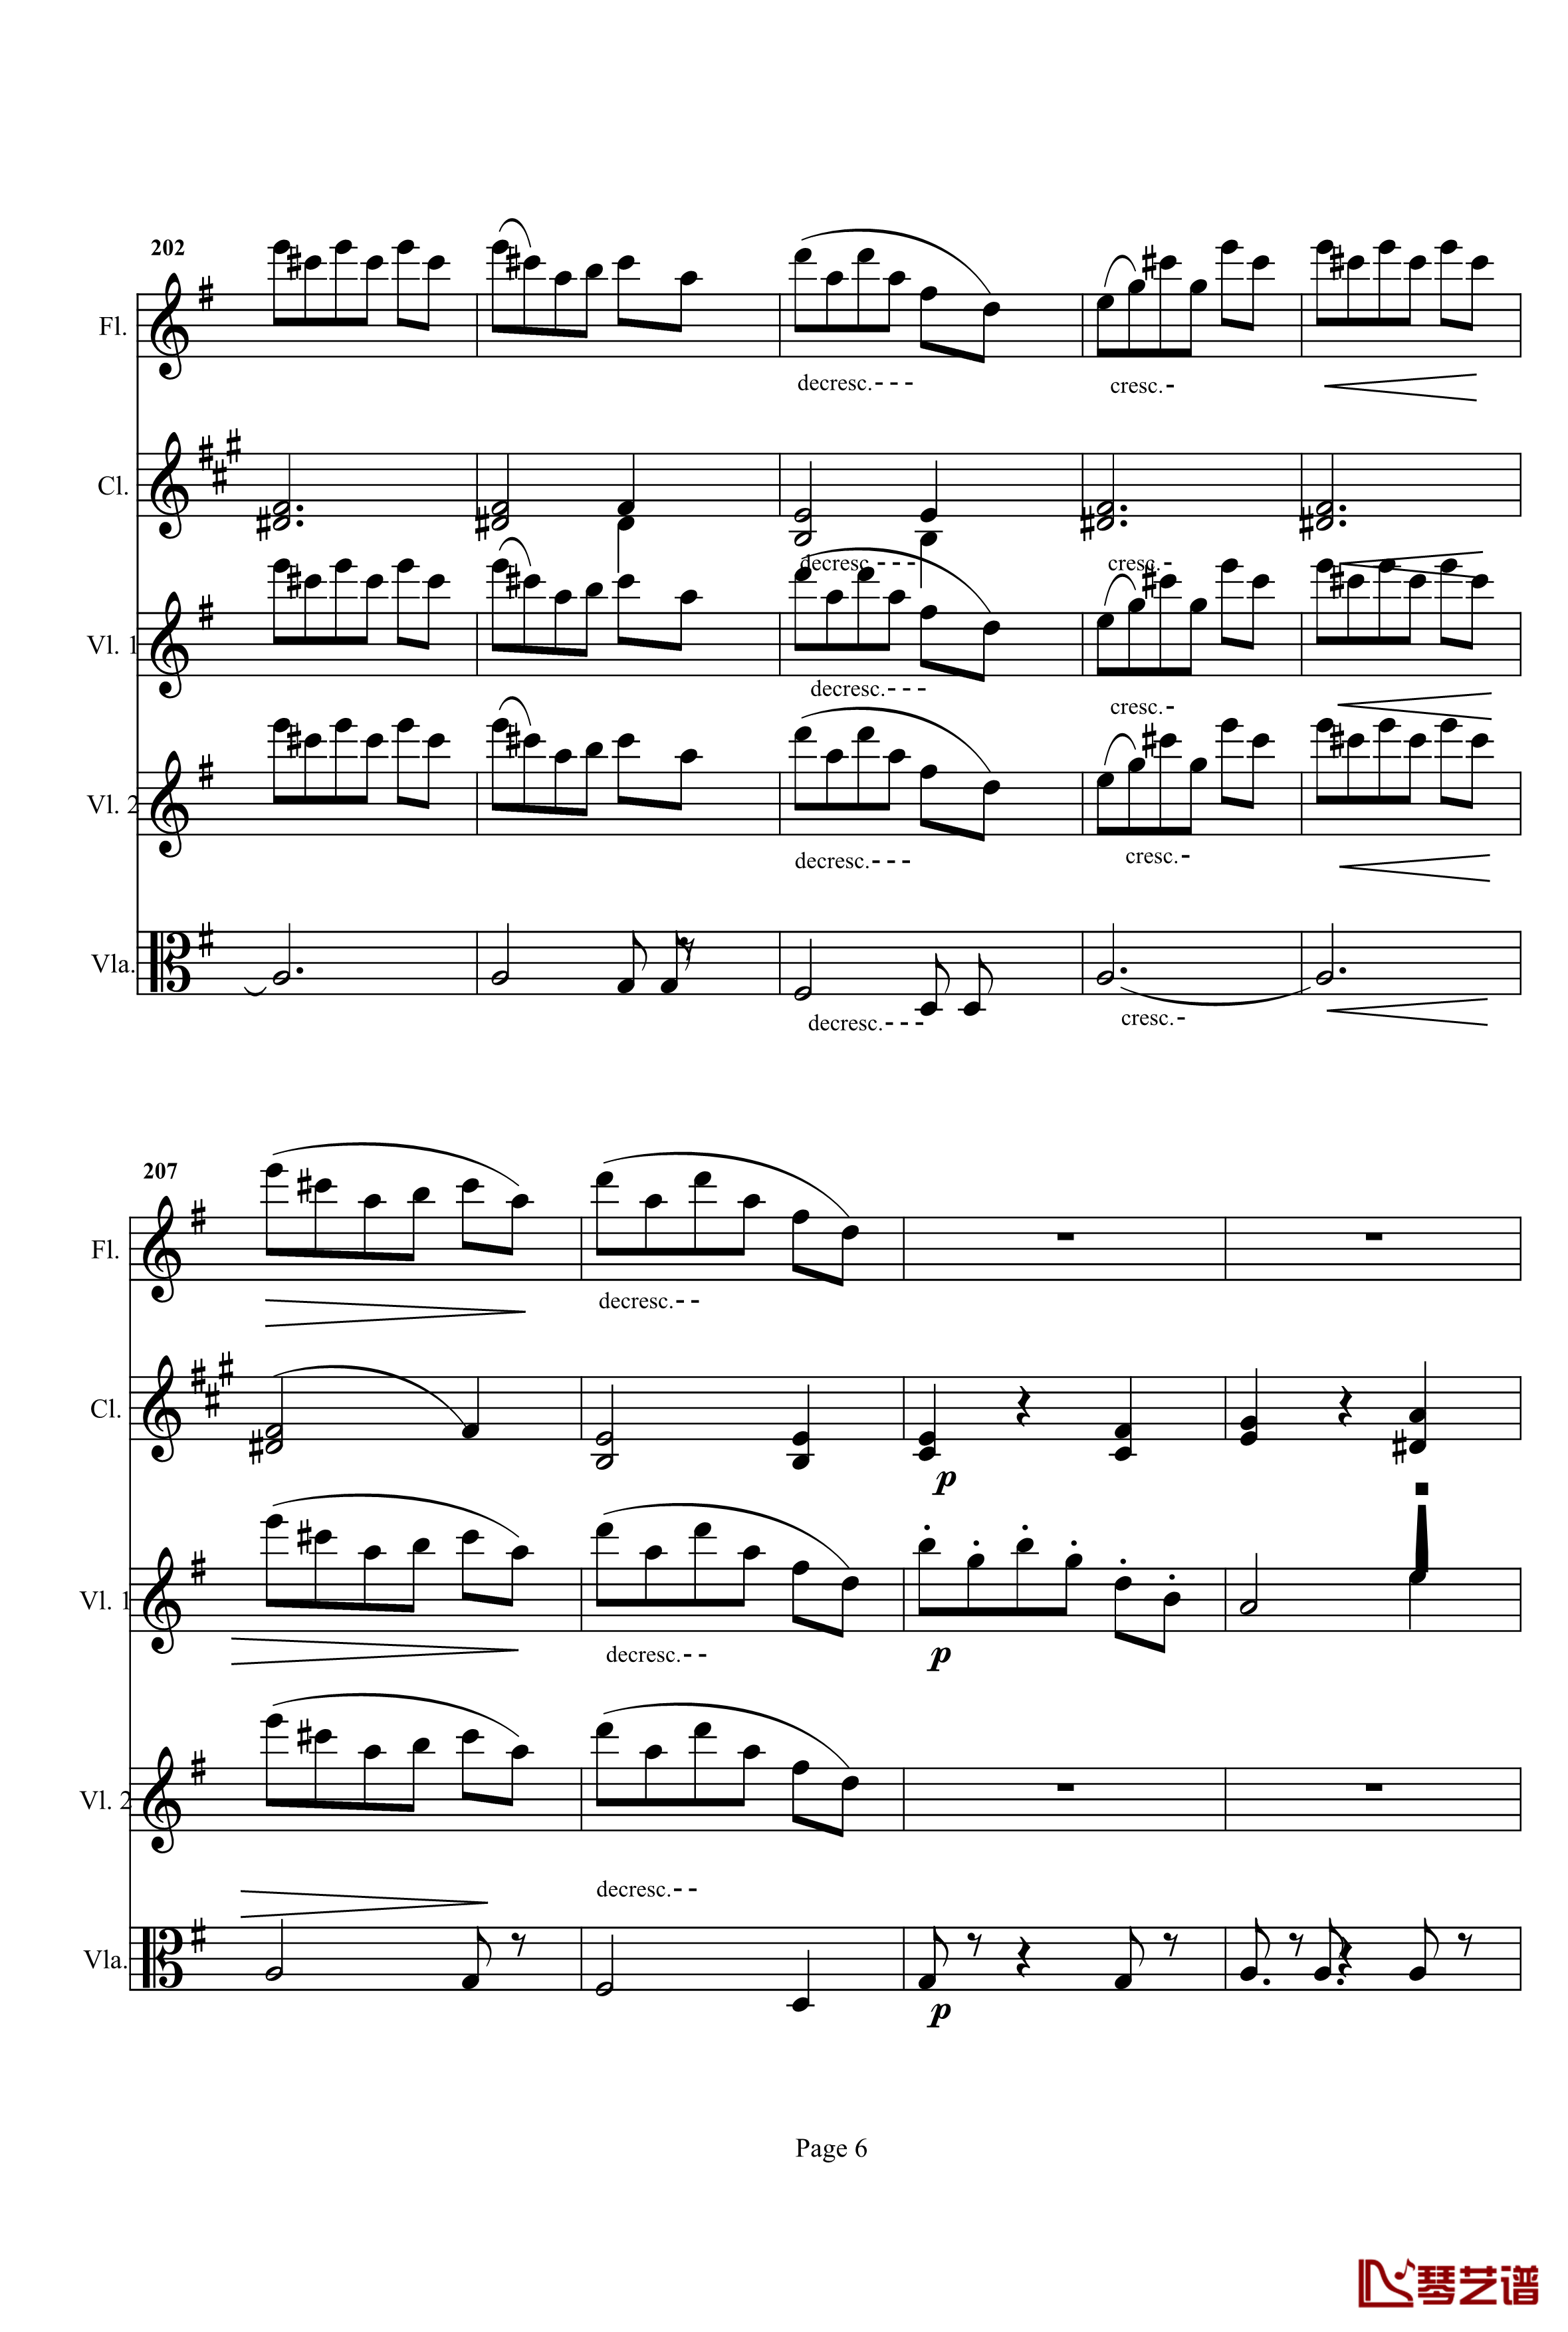 奏鸣曲之交响钢琴谱-第25首-Ⅰ-贝多芬-beethoven6